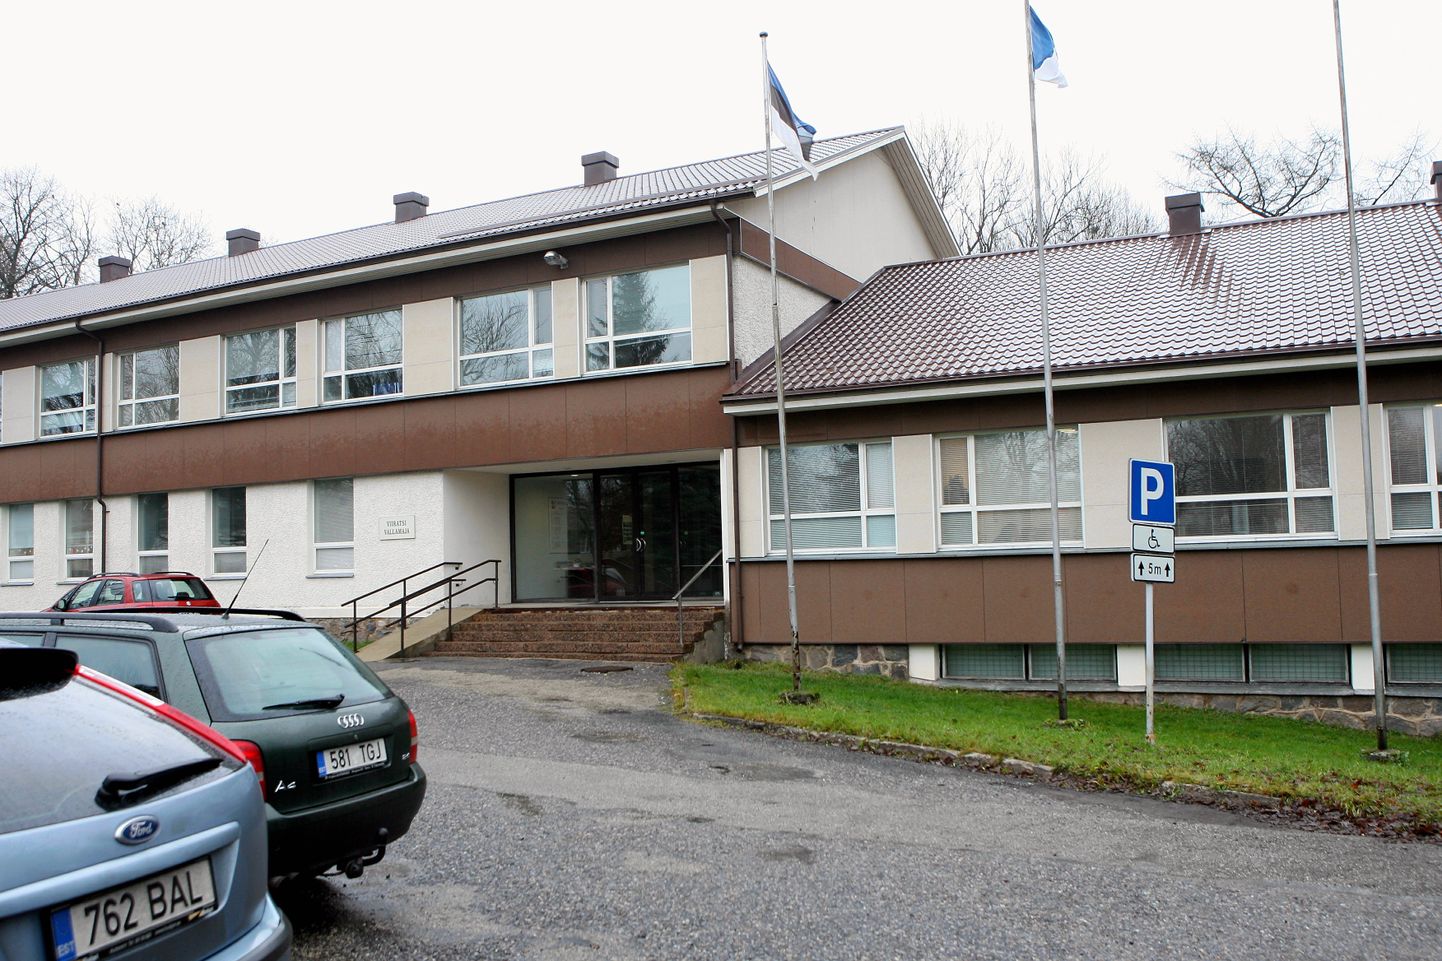 Viljandi vallavalitsus kuulutas välja arhitektuurivõistluse Viiratsis asuva hoone rekonstrueerimiseks.